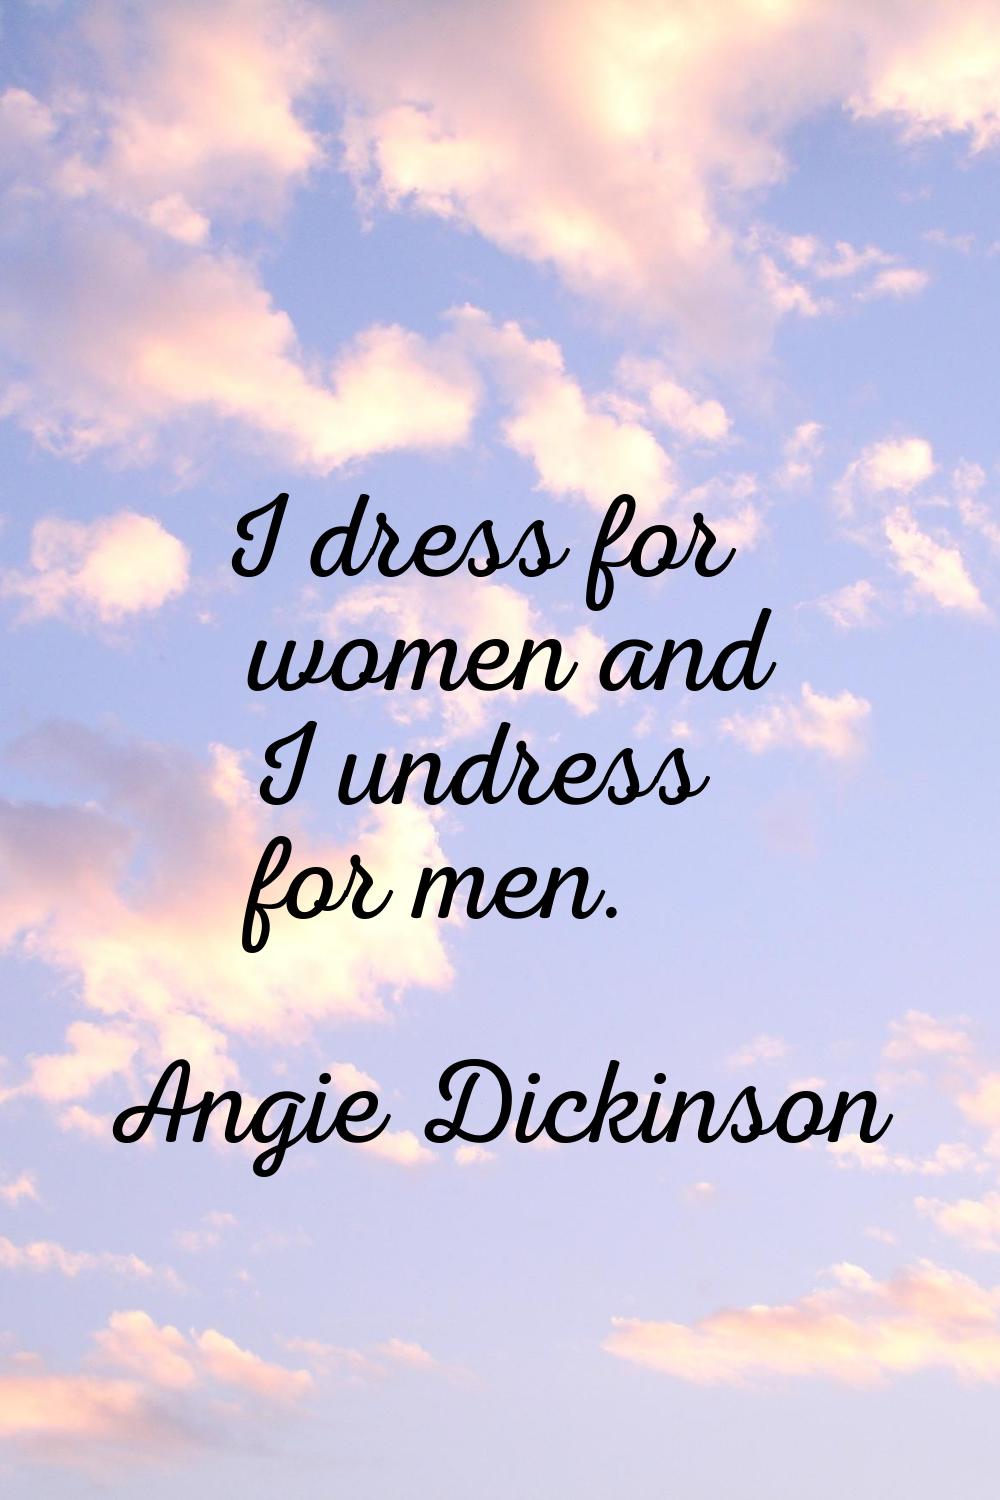 I dress for women and I undress for men.